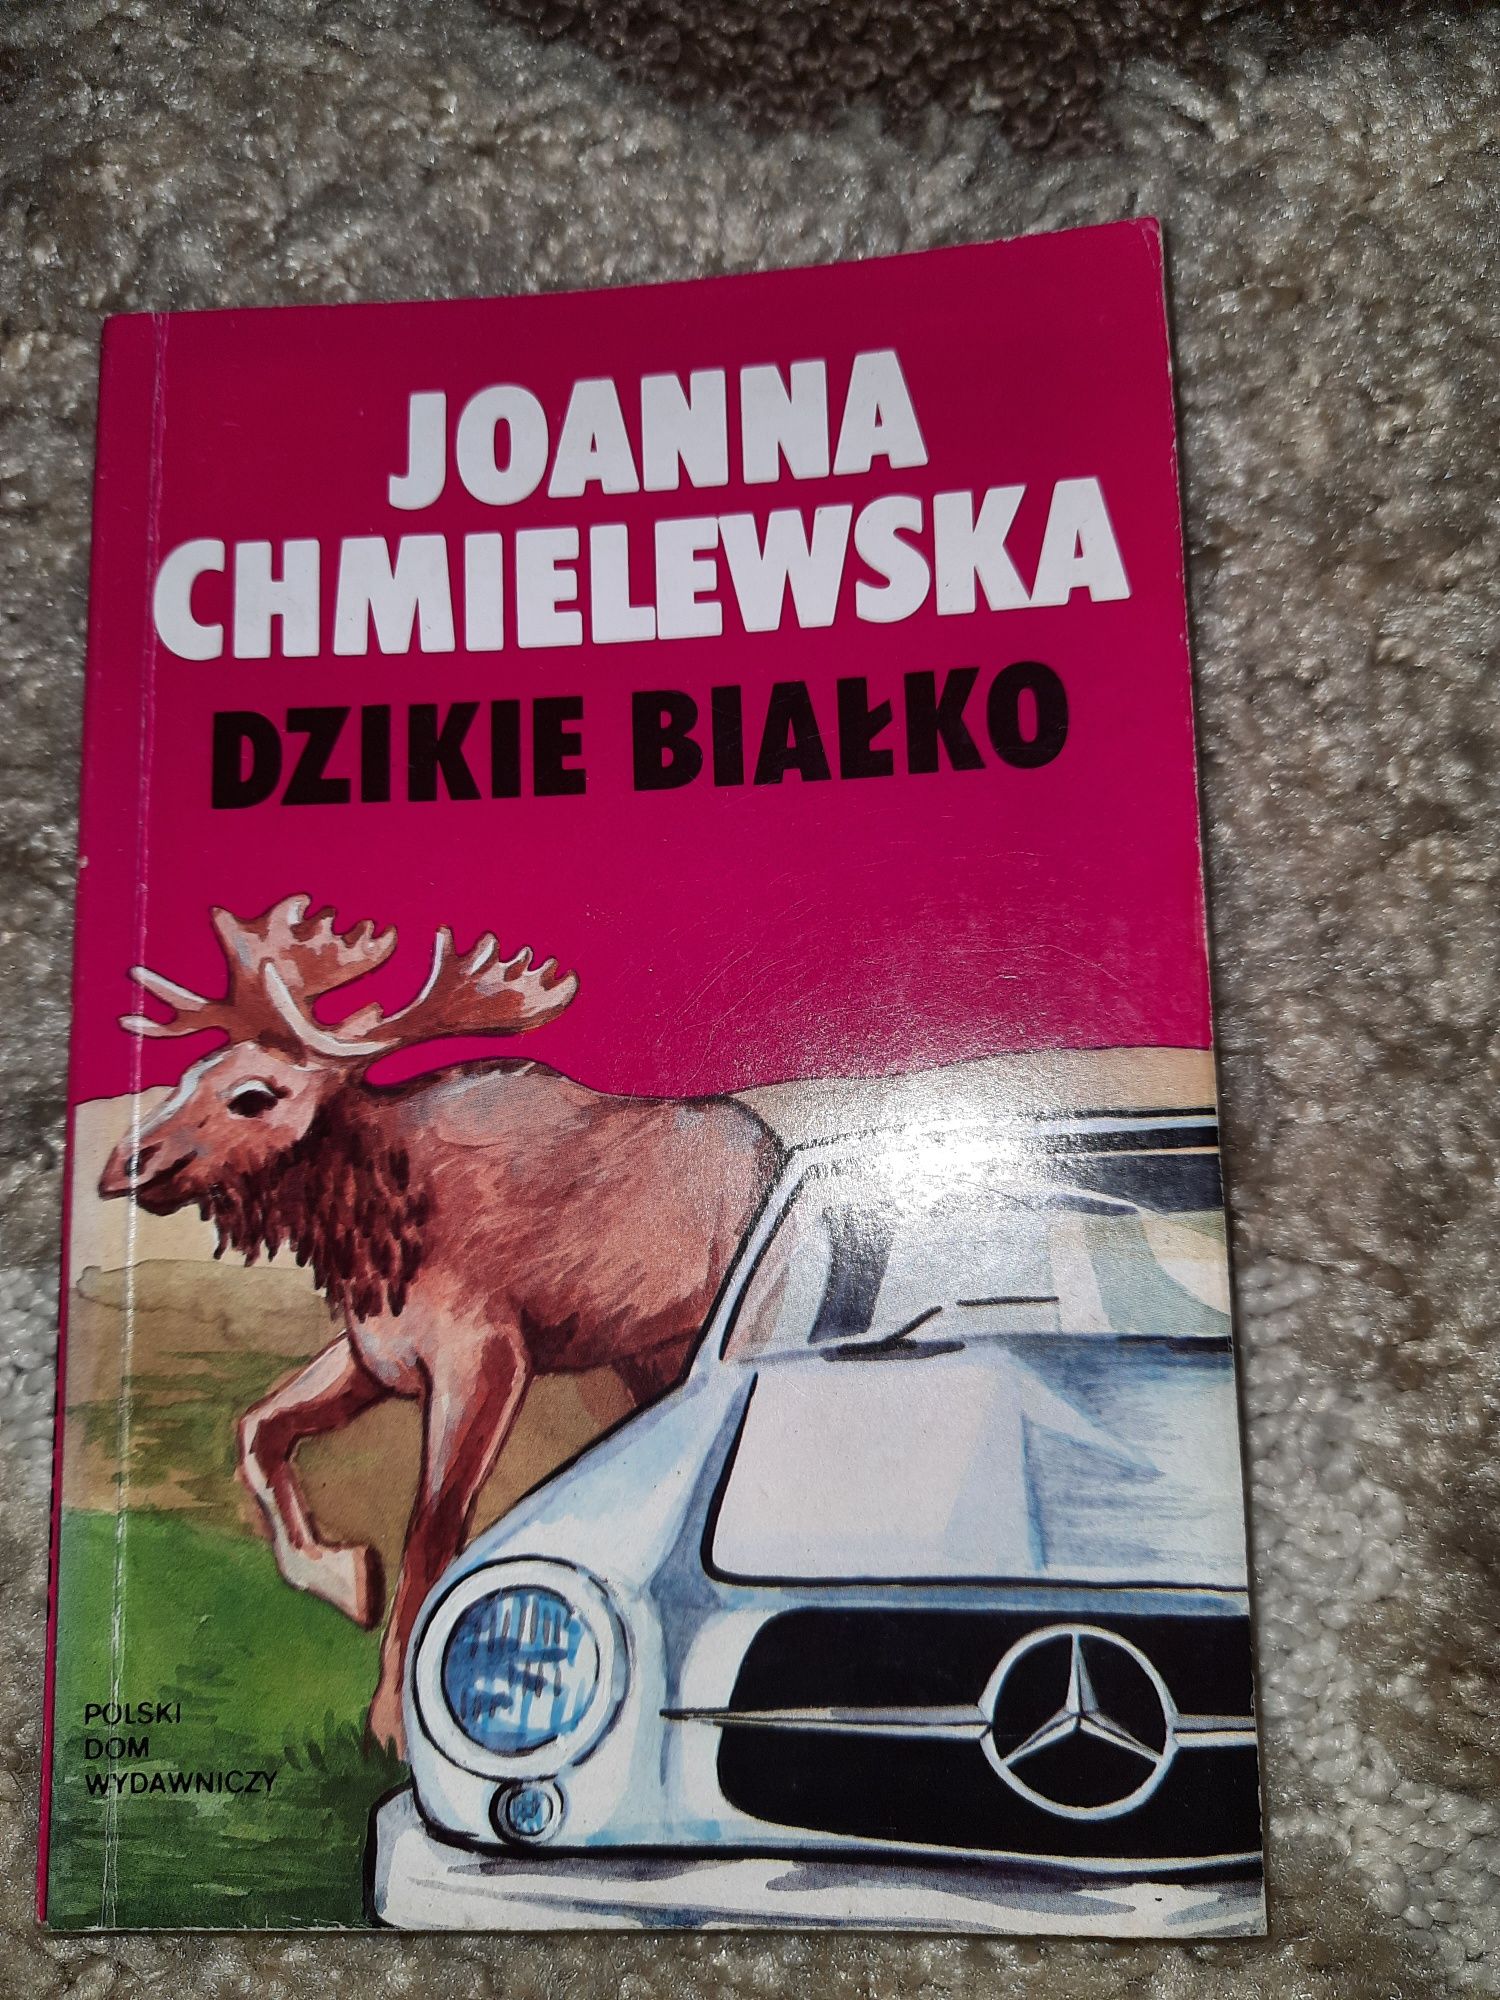 Joanna Chmielewska "Dzikie białko"